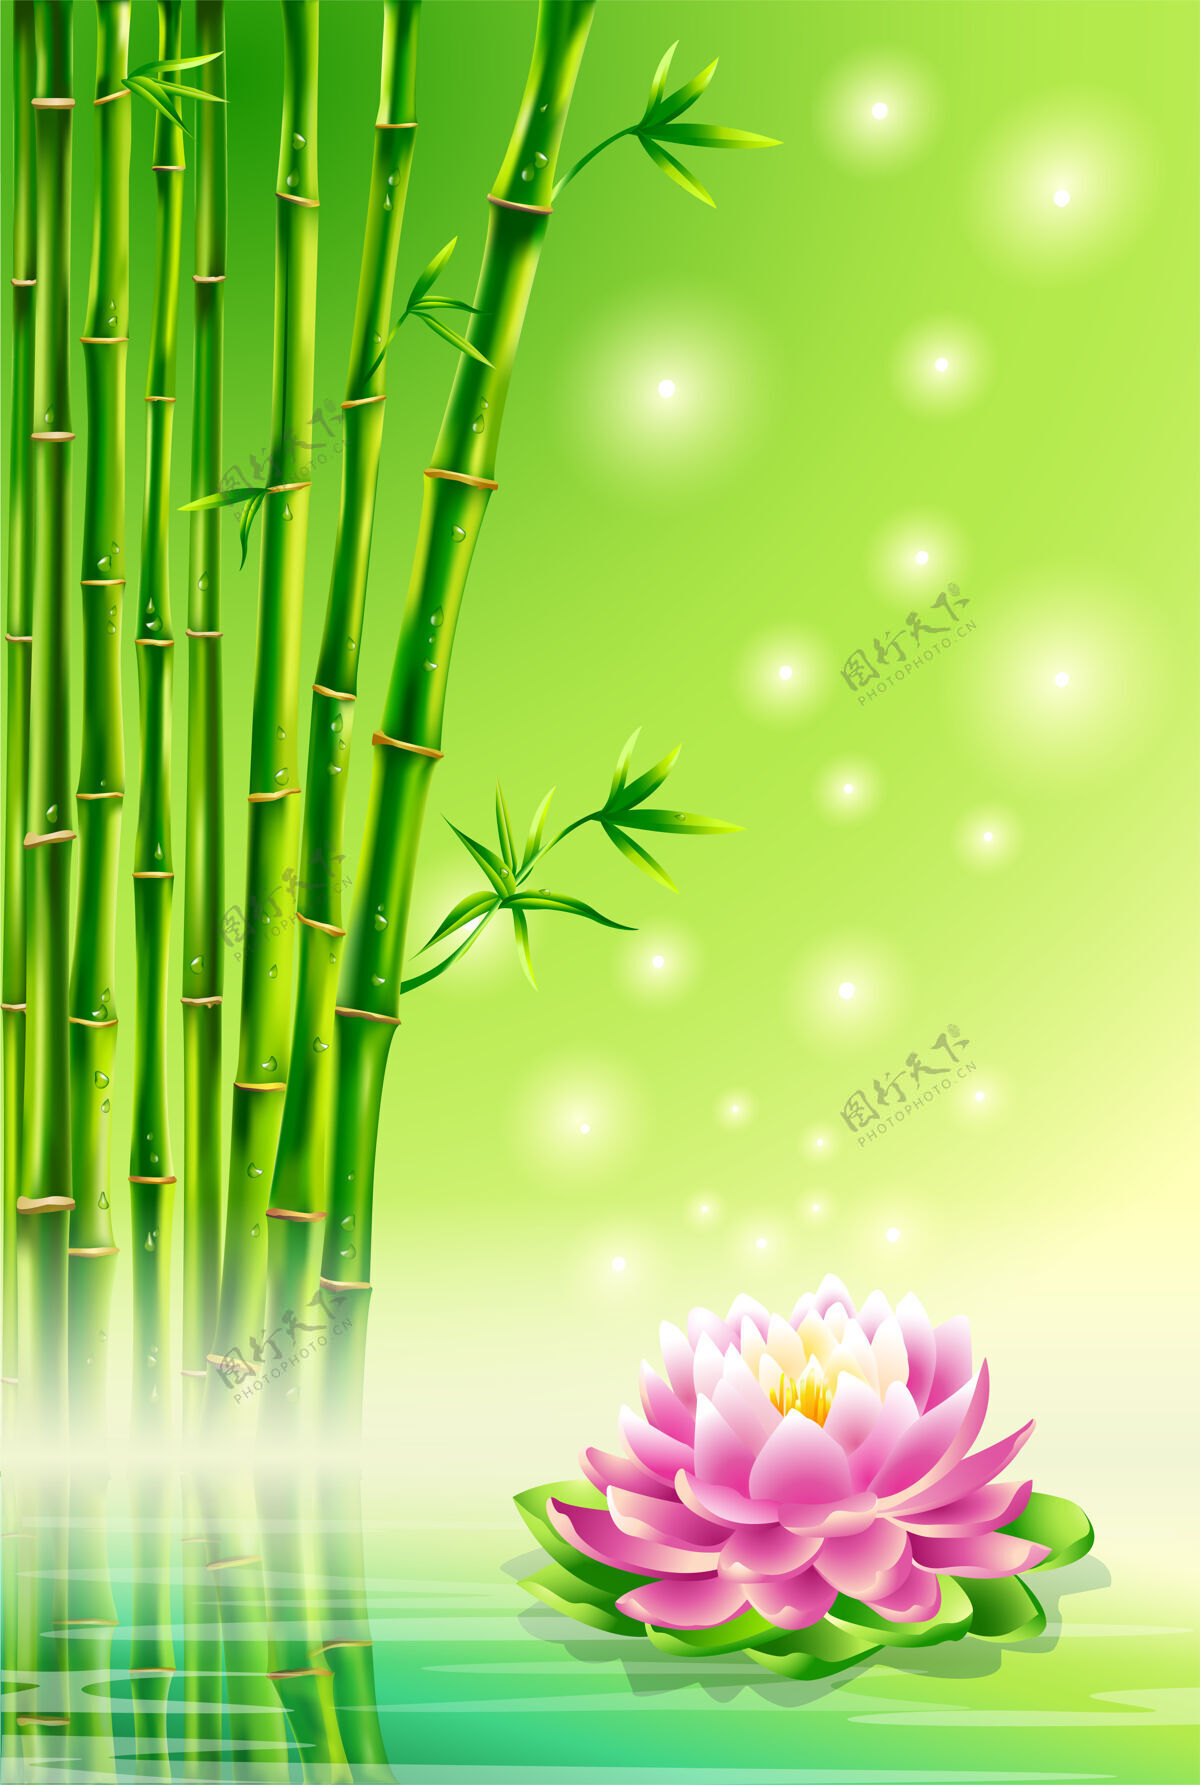 竹子绿色的背景 竹子和莲花植物森林环境